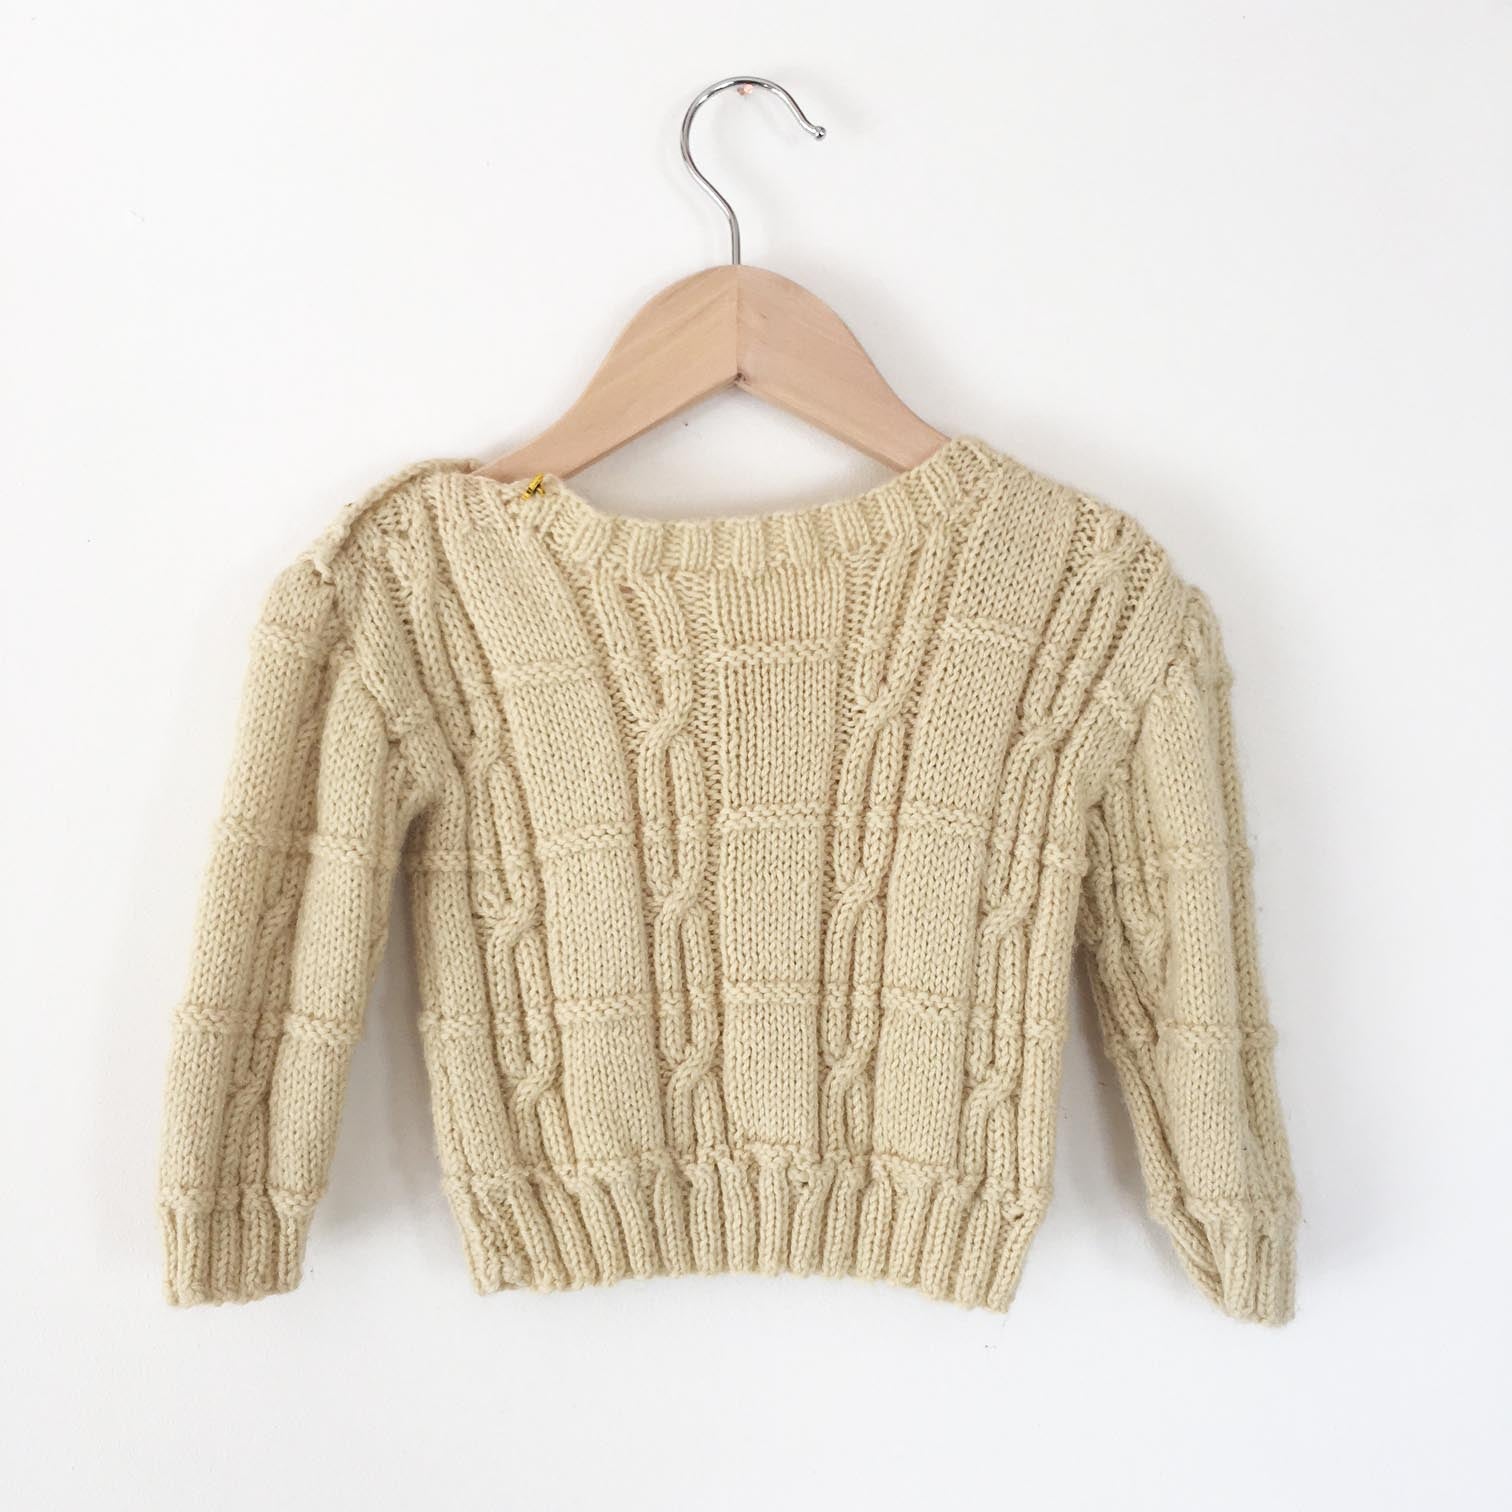 Handknit sweater size 6-12 months